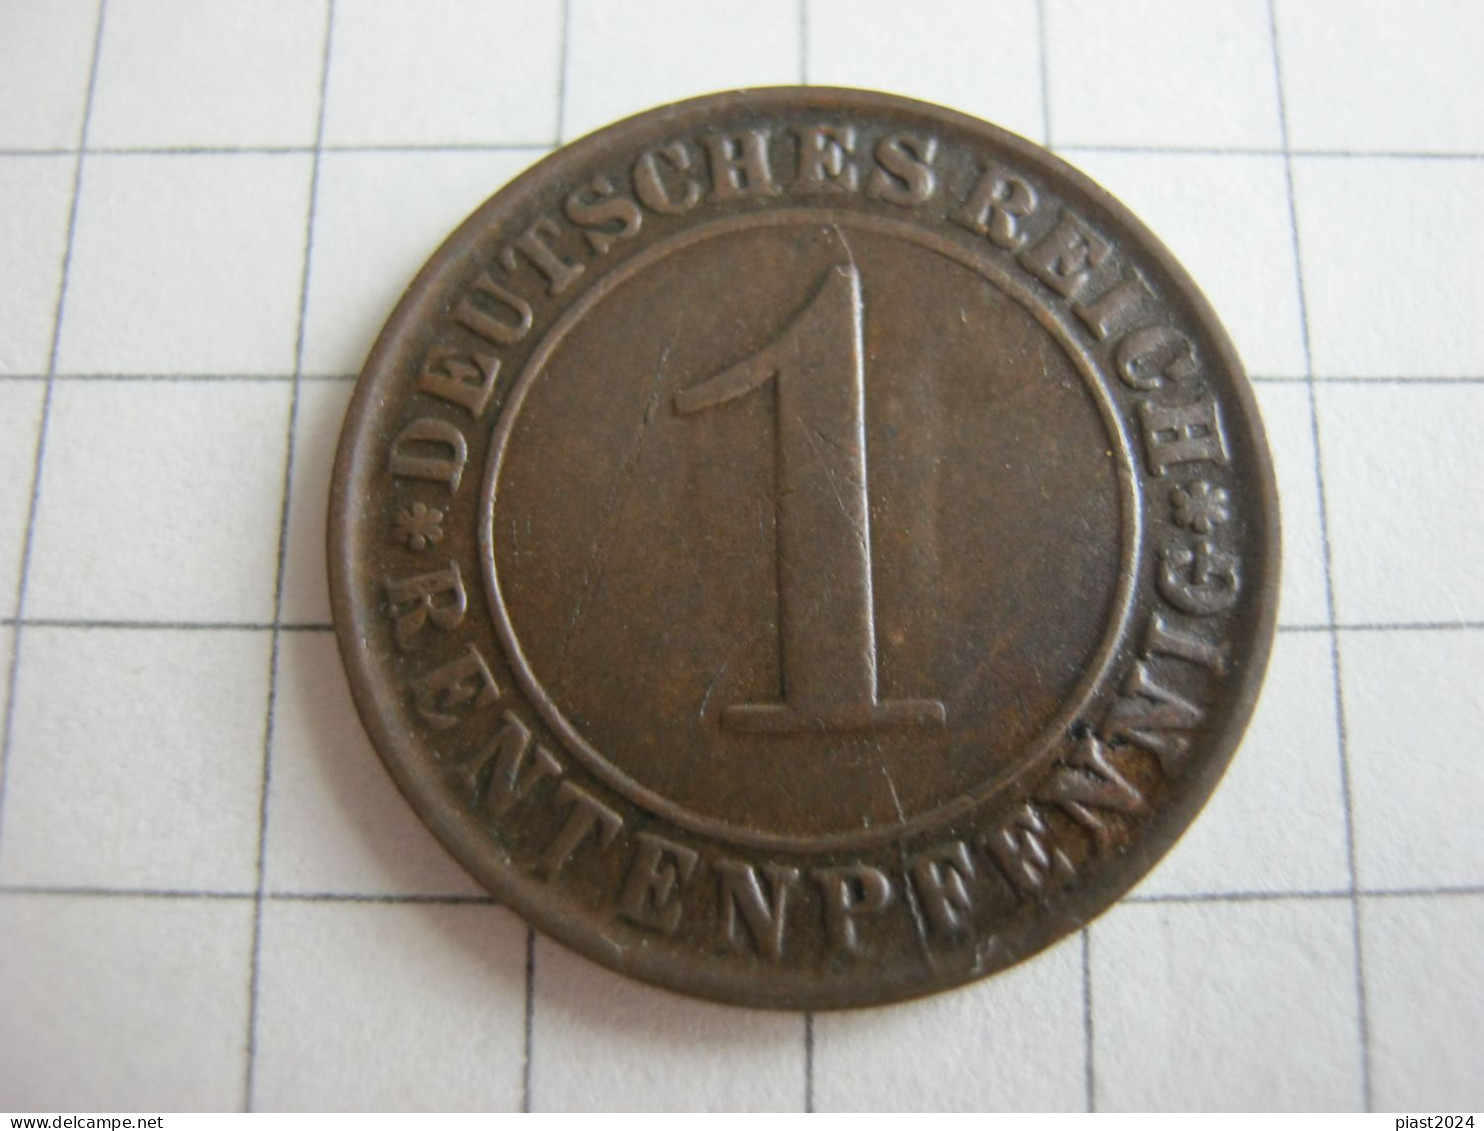 Germany 1 Rentenpfennig 1924 D - 1 Rentenpfennig & 1 Reichspfennig